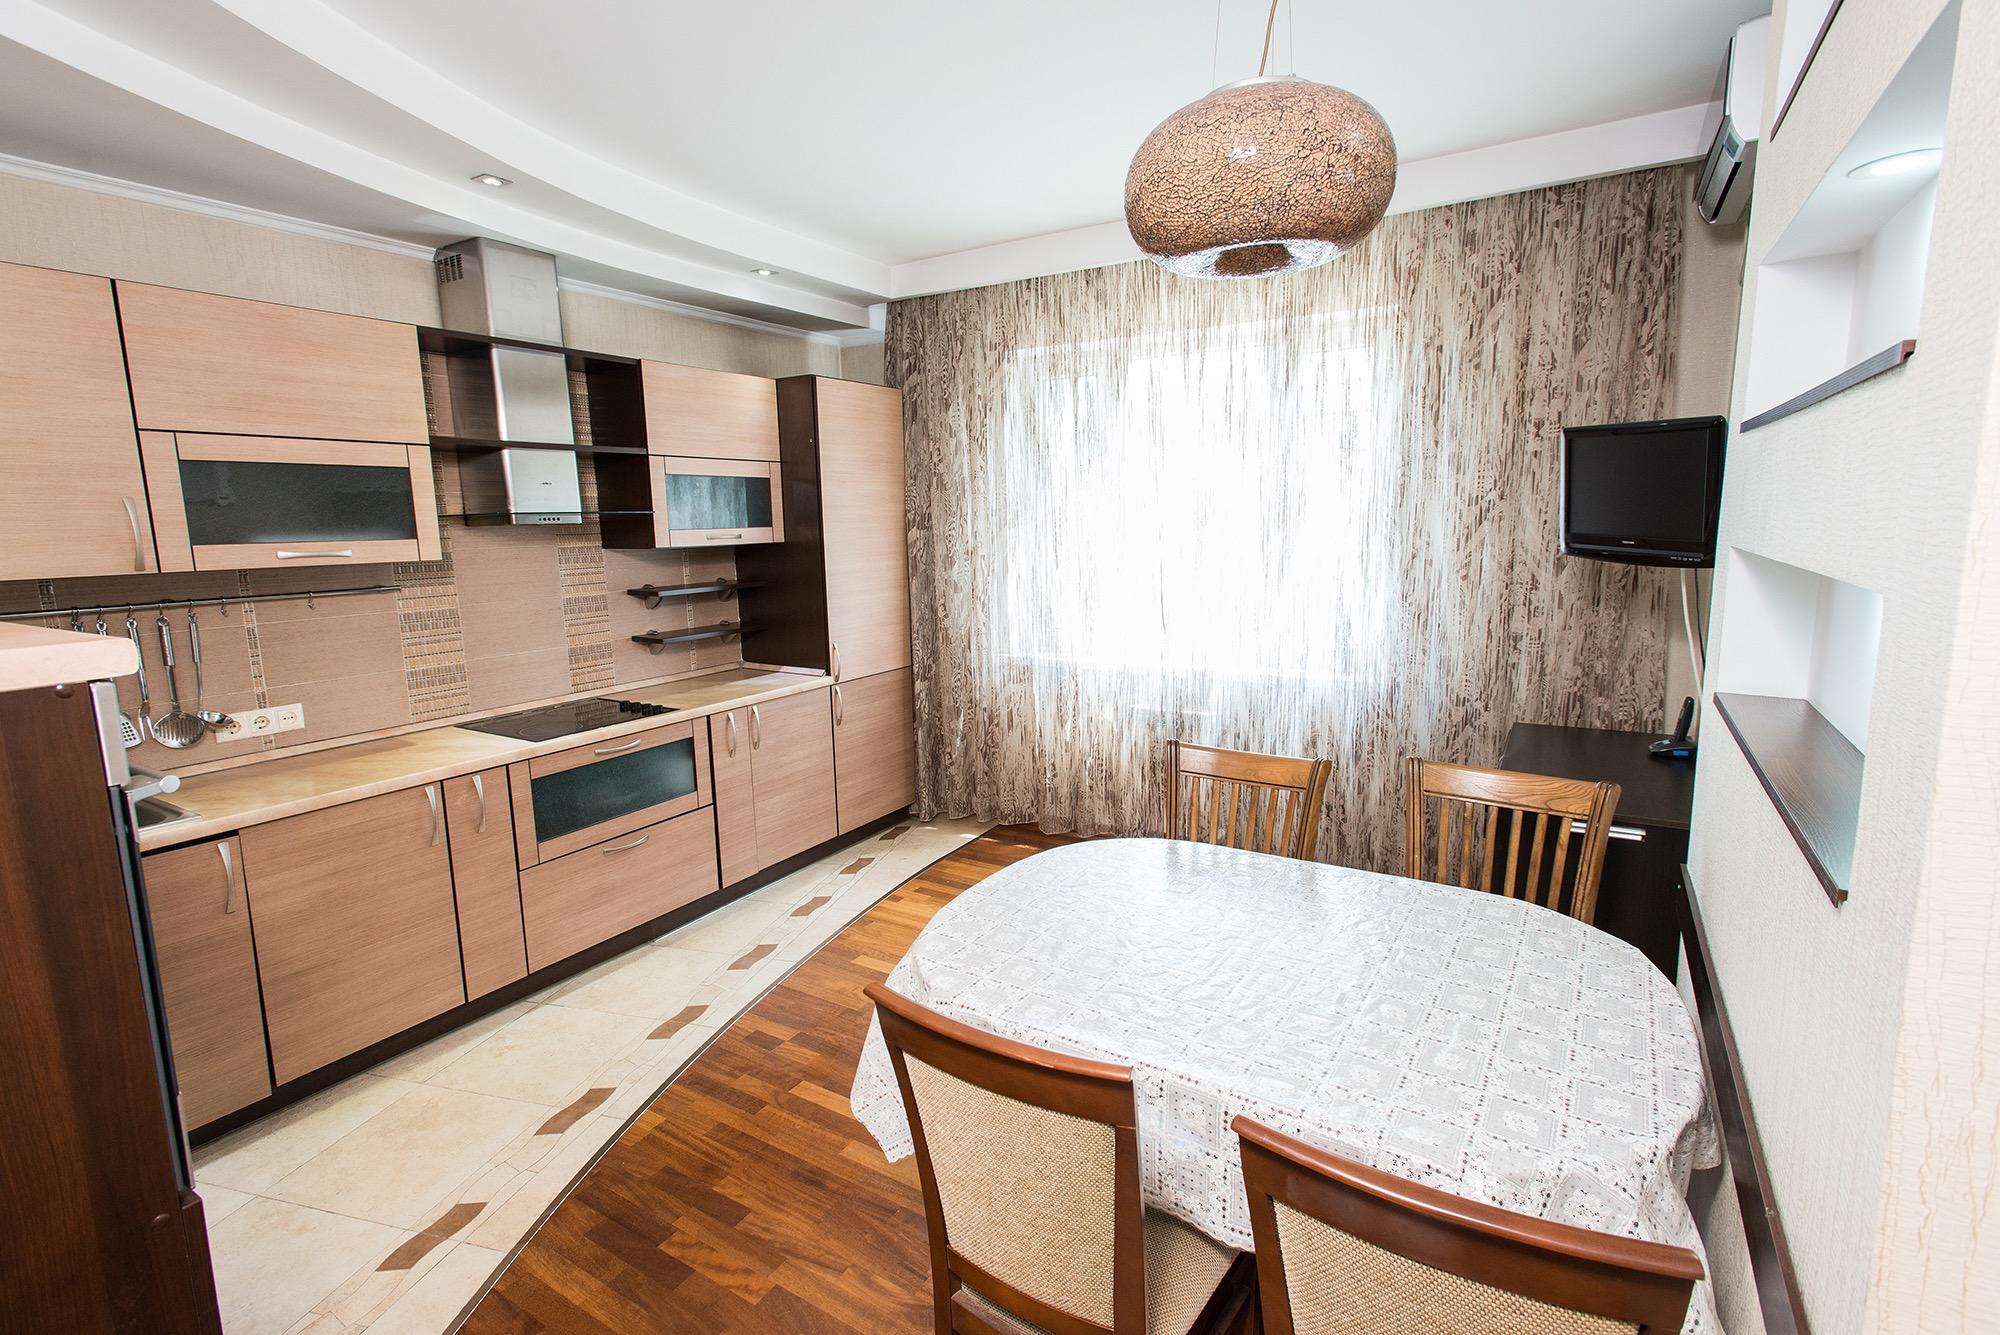 3 комнатный квартира астана. Квартиры в Казахстане. Казахстан апартаменты. Квартира в Казахстане кухня. Кухня для арендной квартиры.